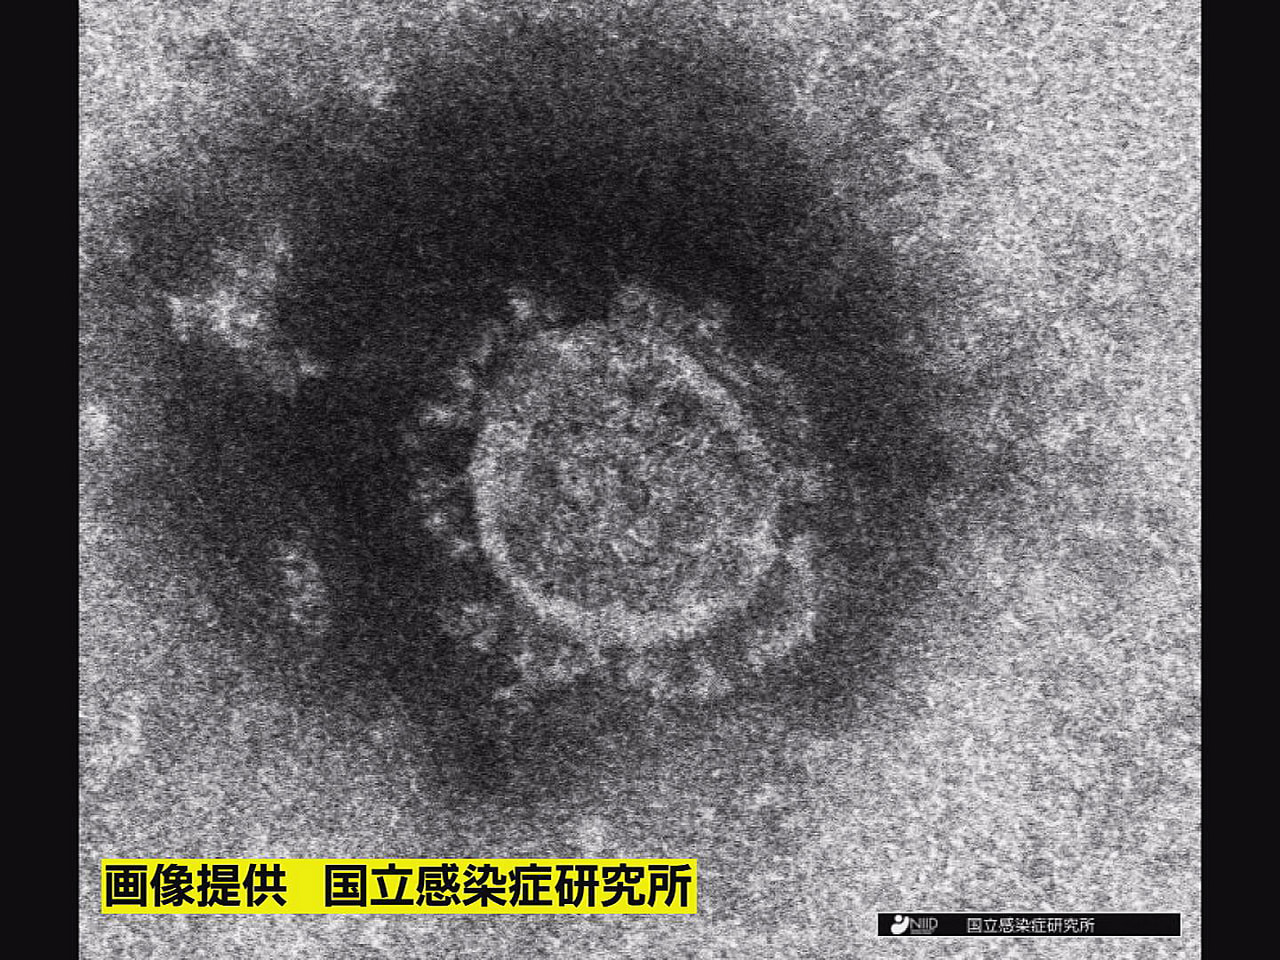 岐阜県は１７日、新型コロナウイルスの新規感染者が８３７人確認されたと発表しました...